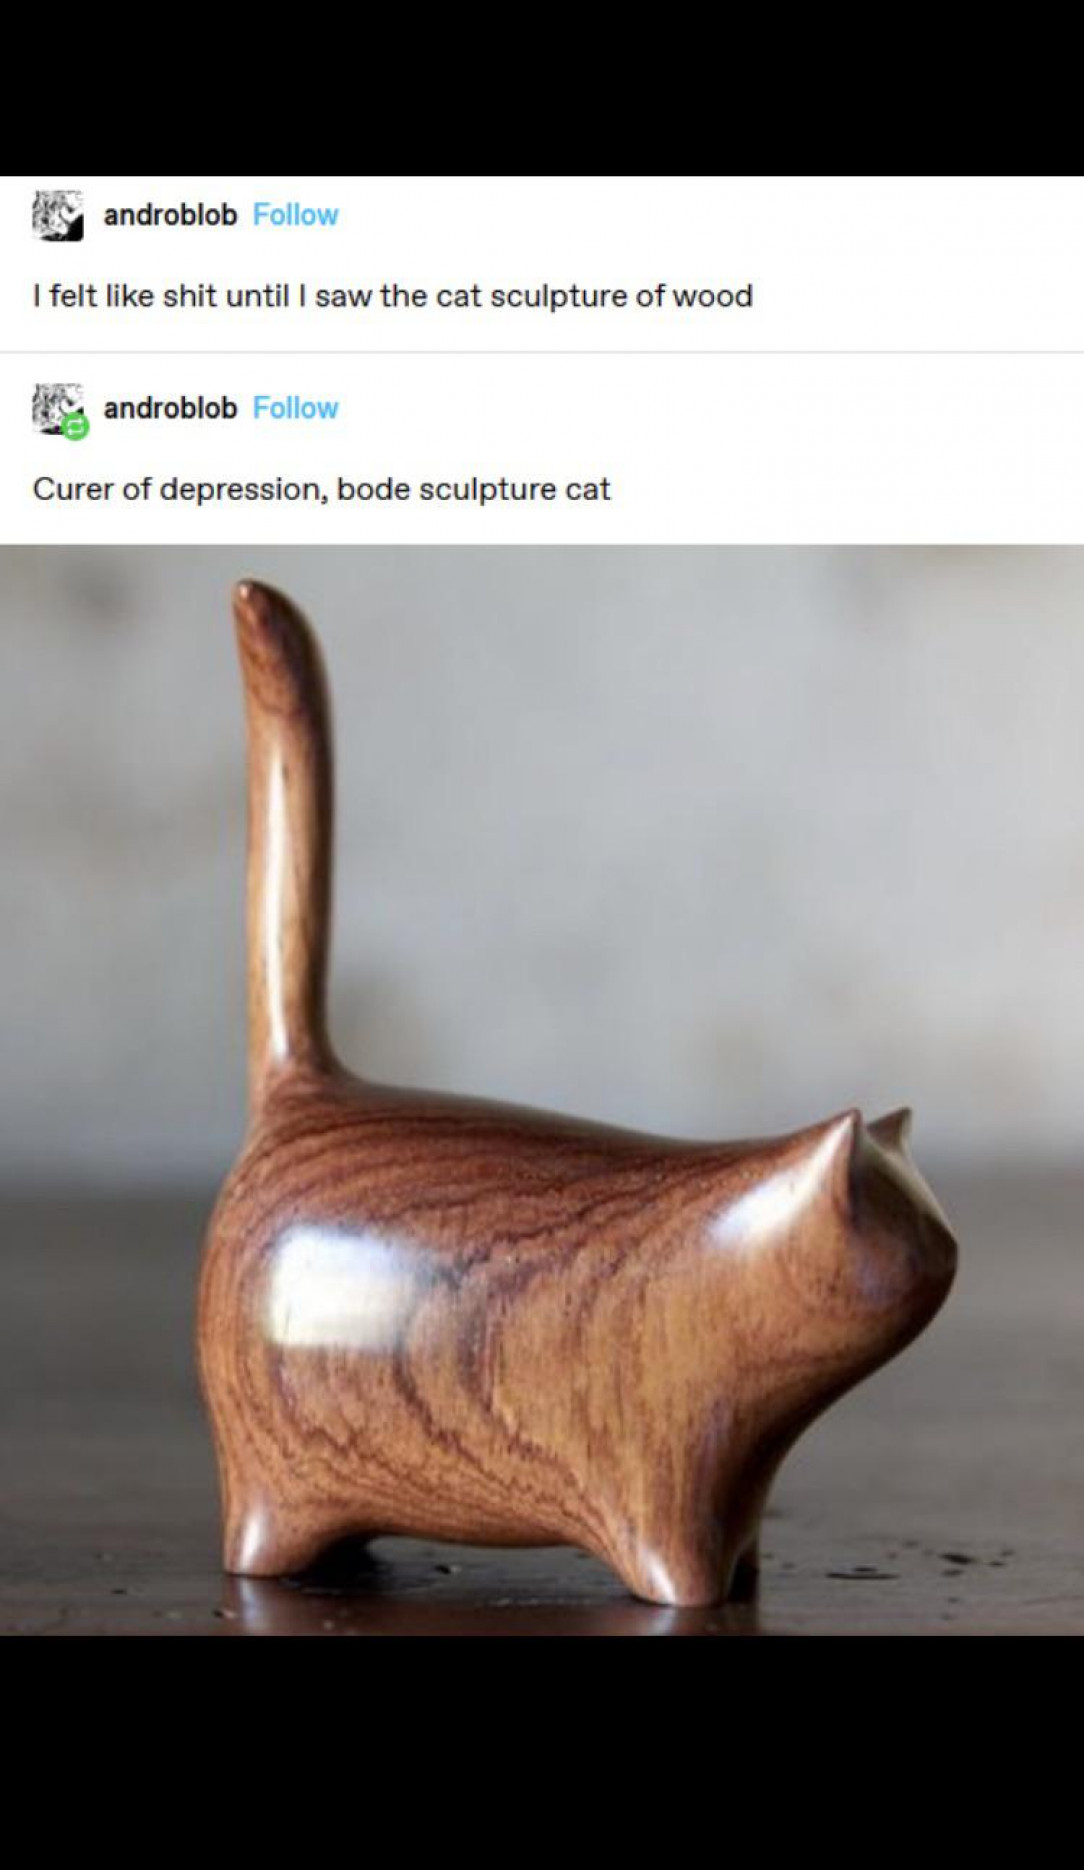 Curer of depression, bode sculpture cat